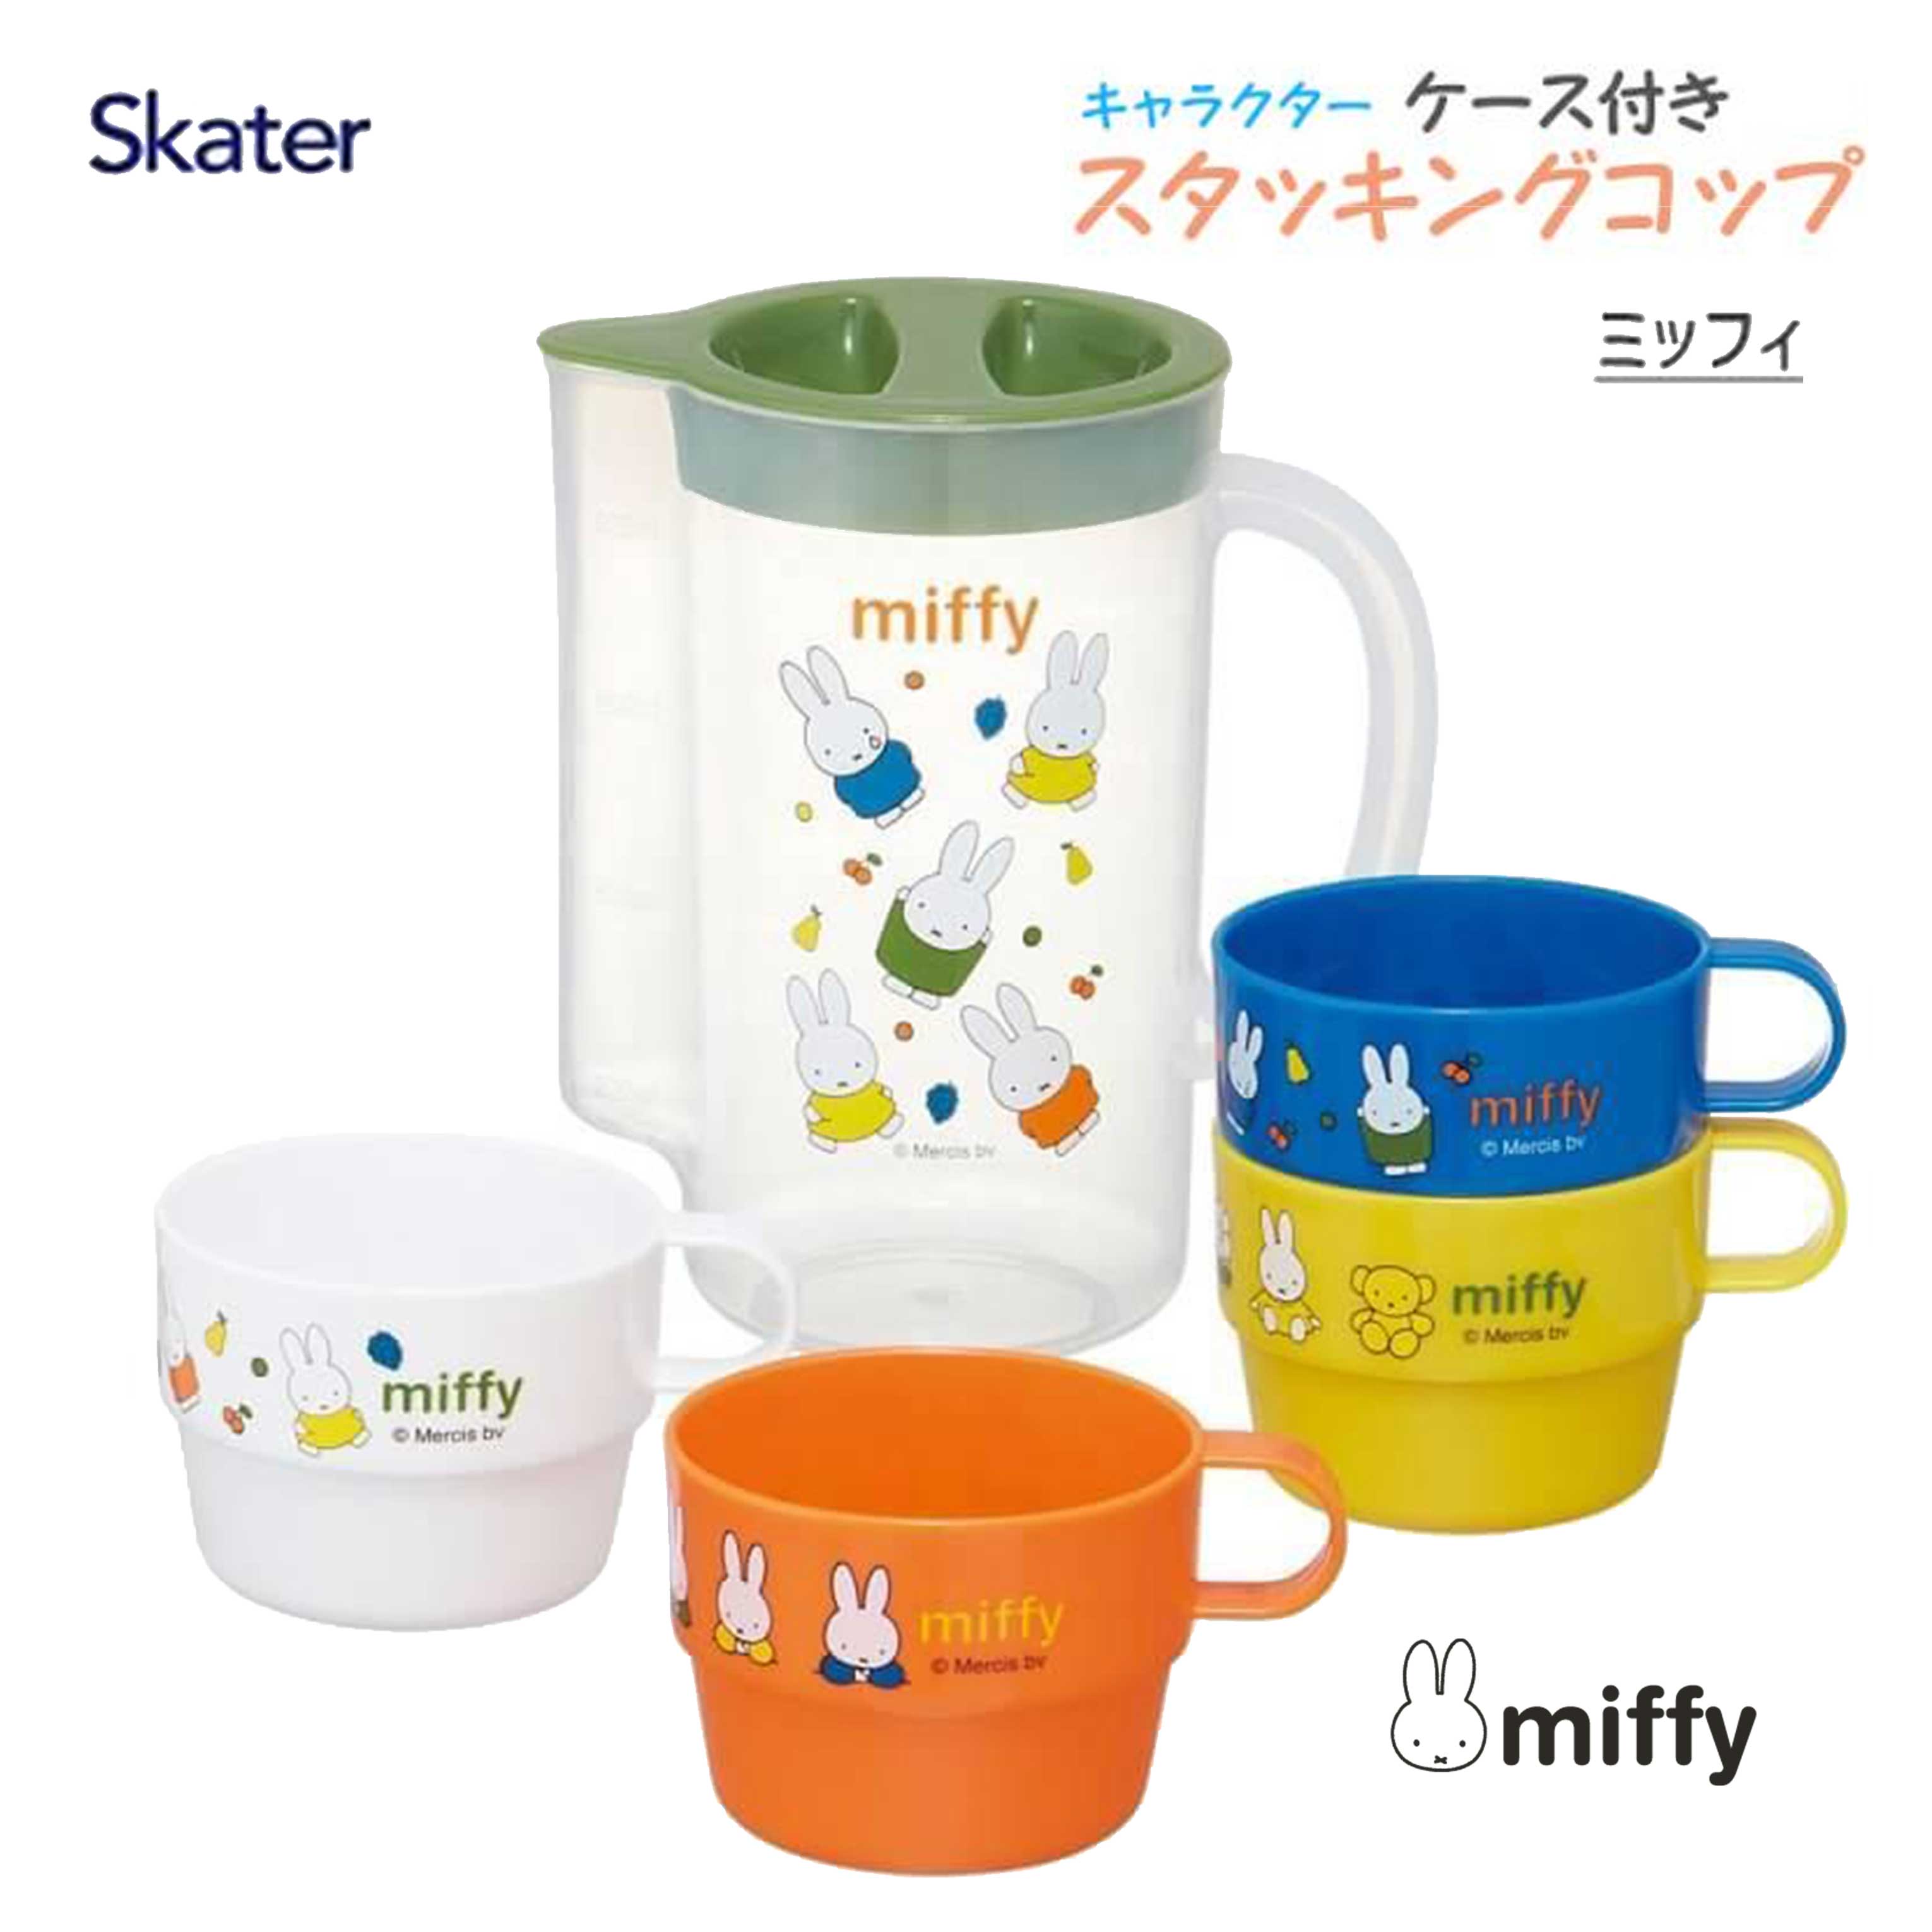 冷水壺 850ml 4入杯組-米菲兔 MIFFY Skater 日本進口正版授權